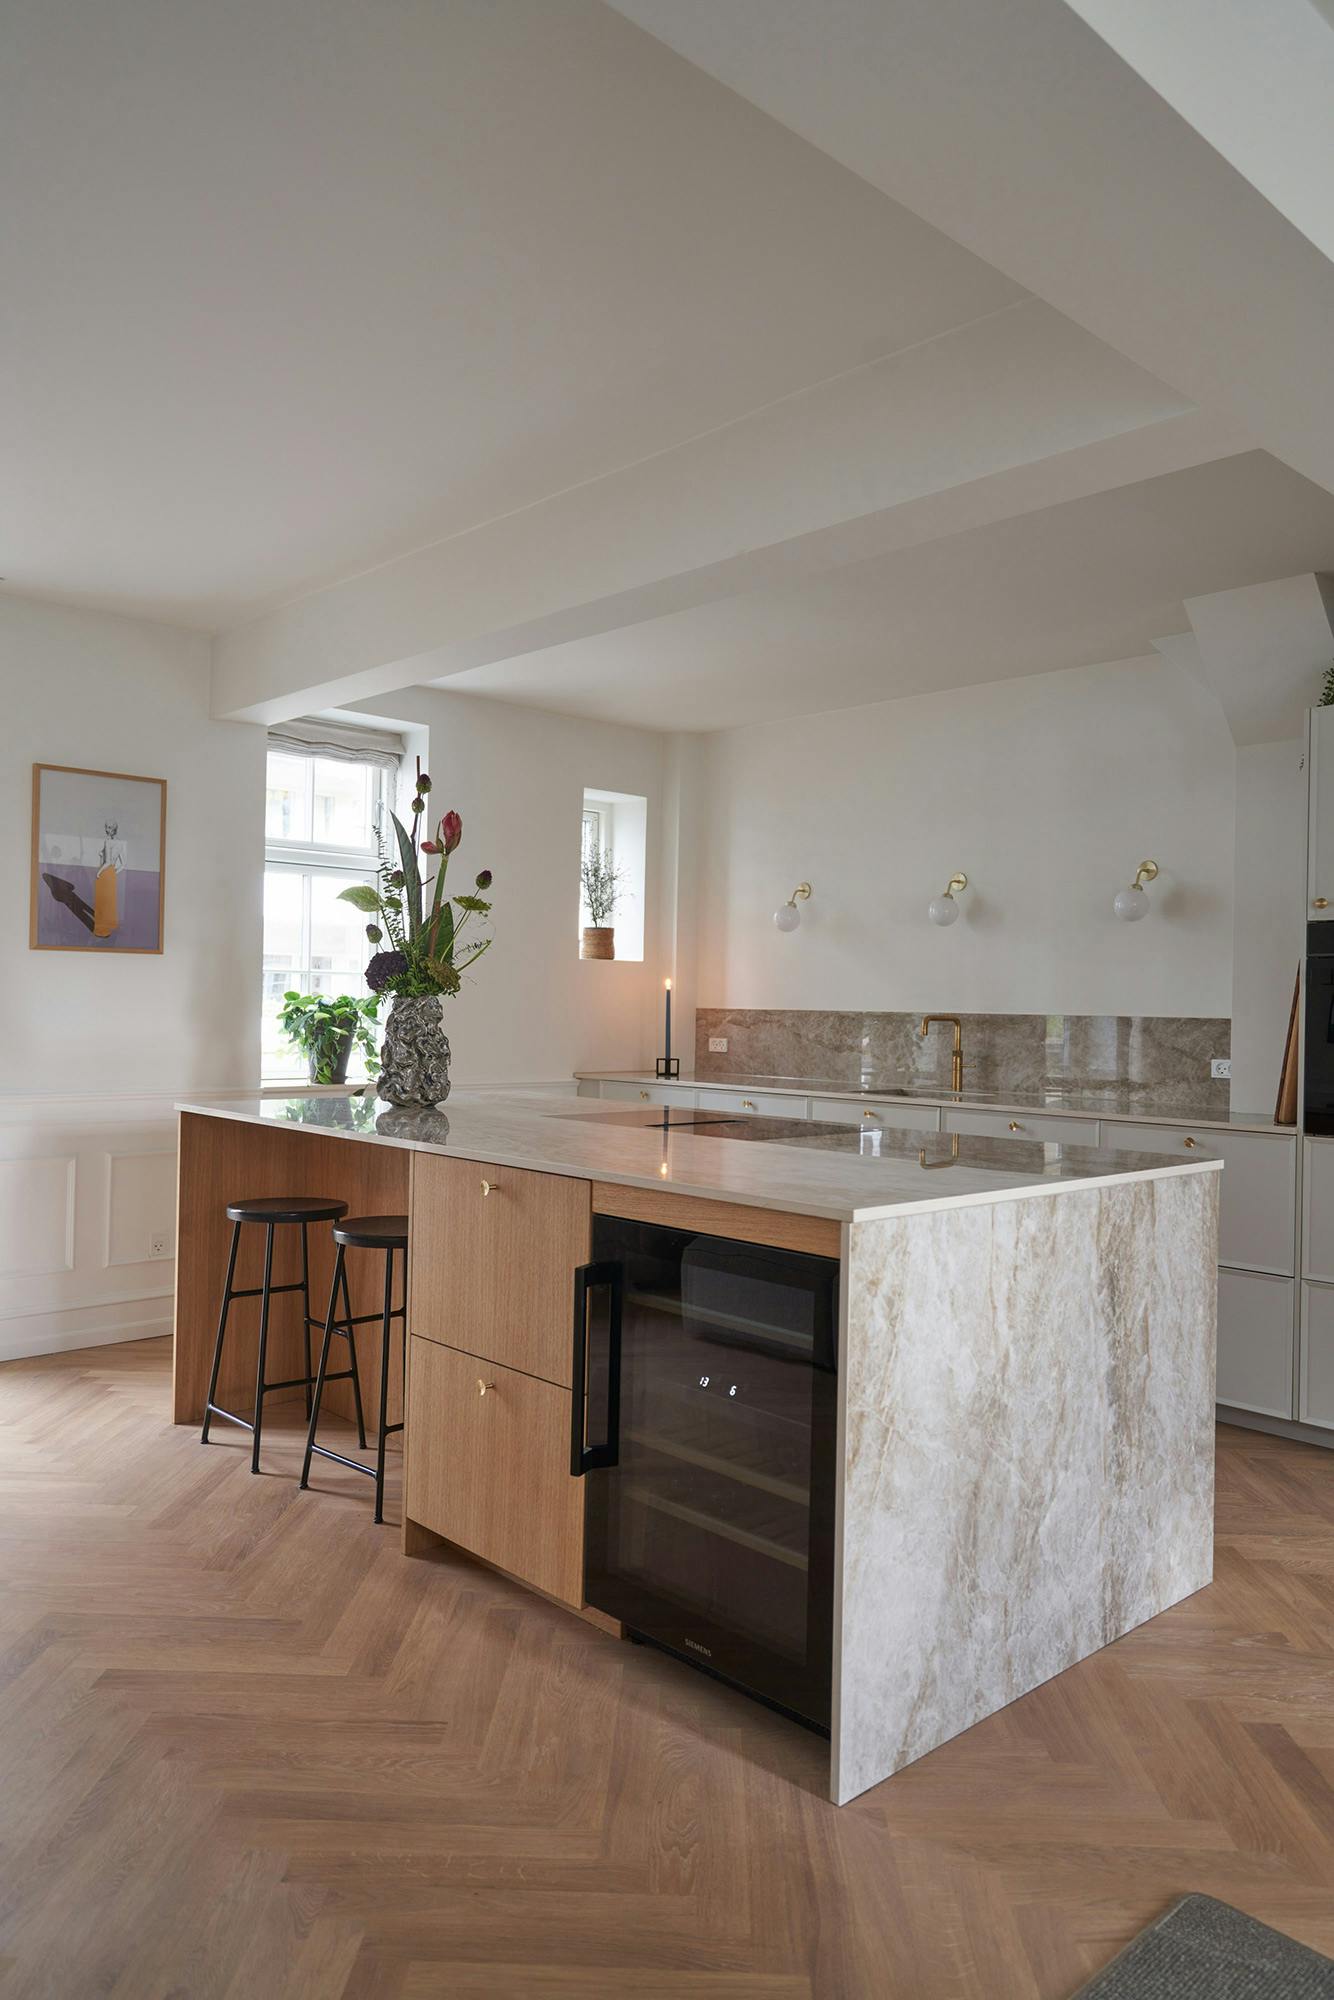 Numero immagine 42 della sezione corrente di Architect and interior designer Memmu Pitkänen chose the beautiful DKTN Helena for her kitchen di Cosentino Italia